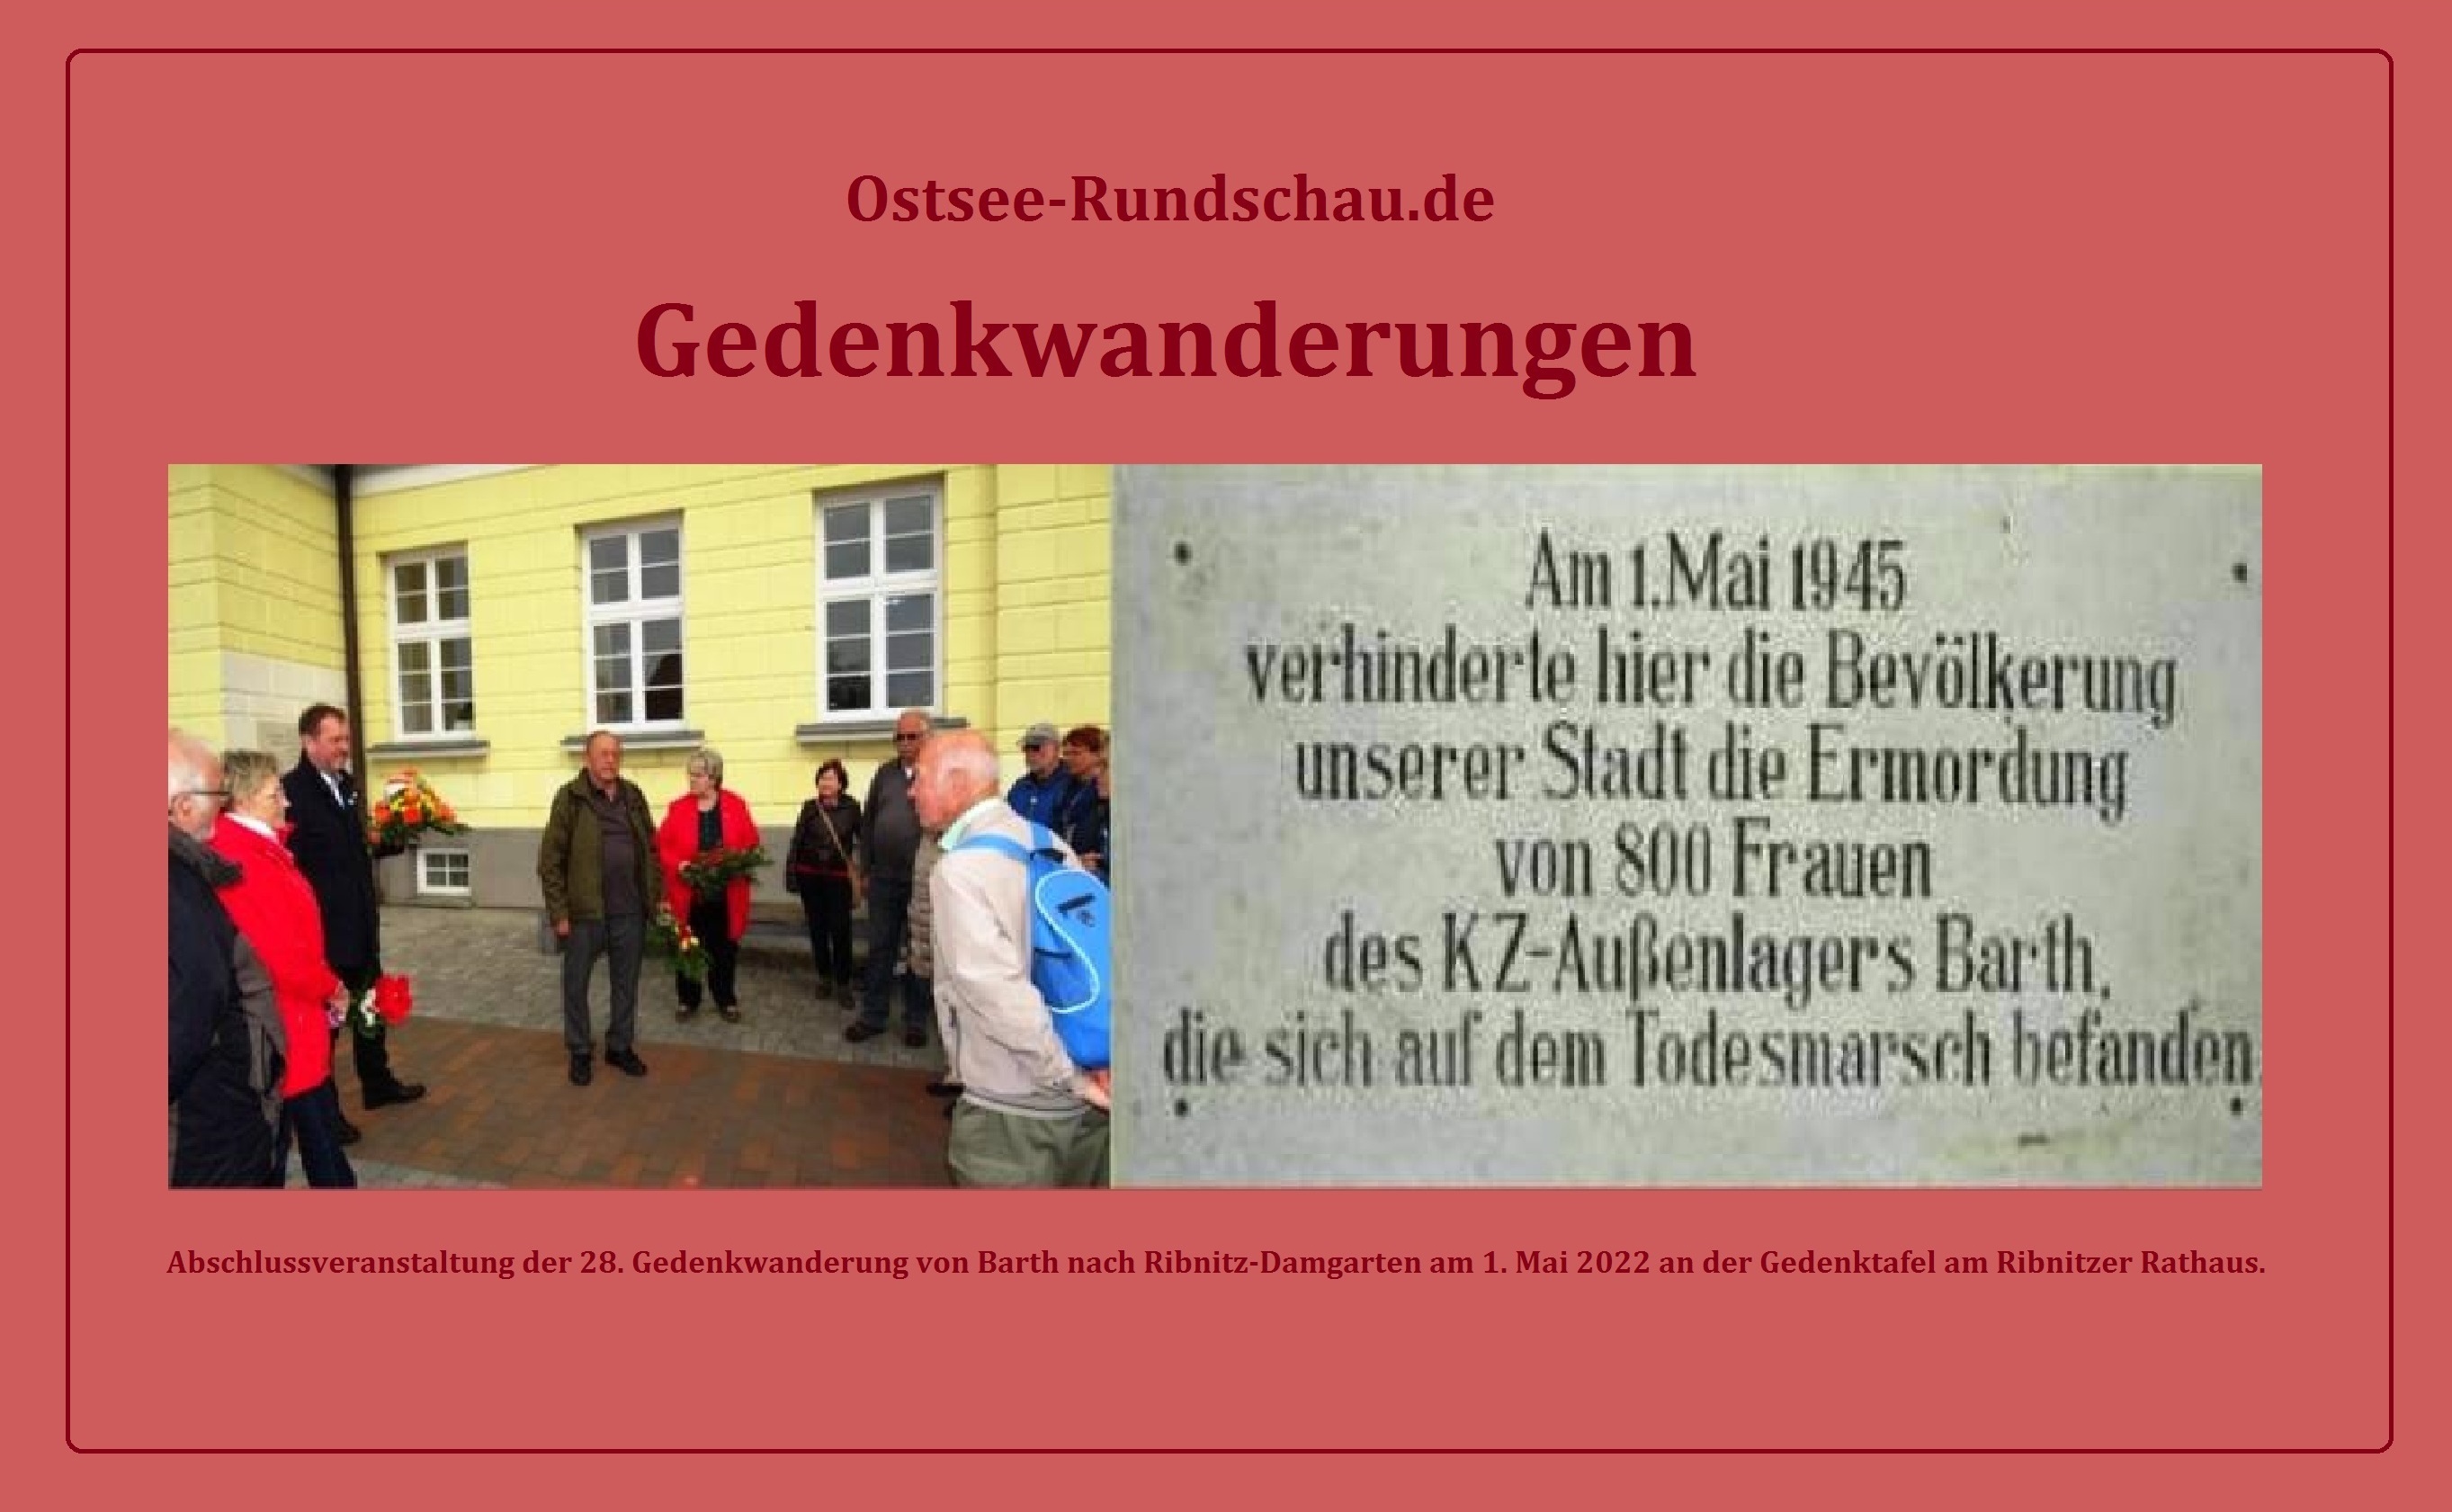 Gedenkwanderungen - Abschlussveranstaltung der 28. Gedenkwanderung von Barth nach Ribnitz-Damgarten am 1. Mai 2022 an der Gedenktafel am Ribnitzer Rathaus. - Fotos (2): Eckart Kreitlow 